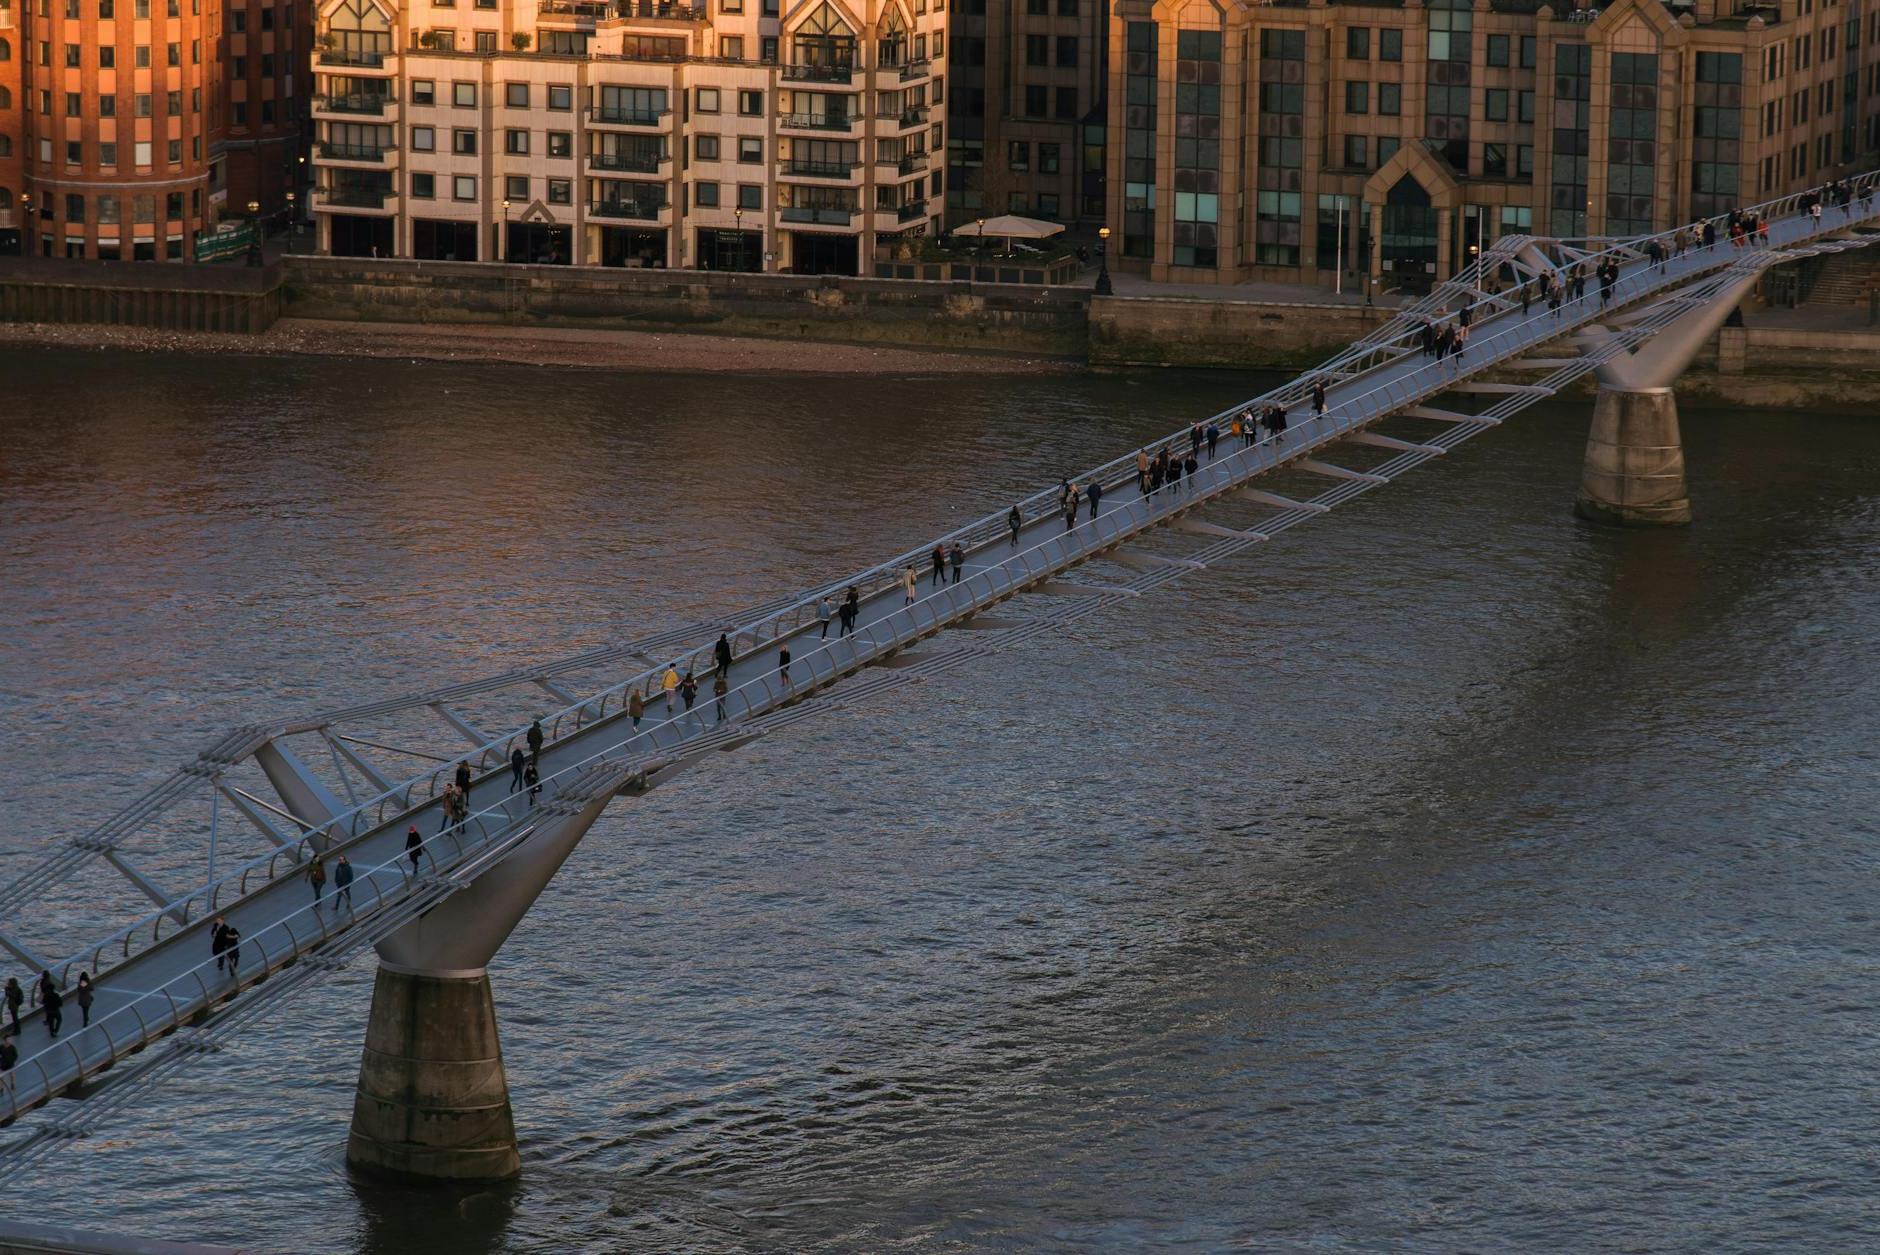 Millennium bridge over rippling river